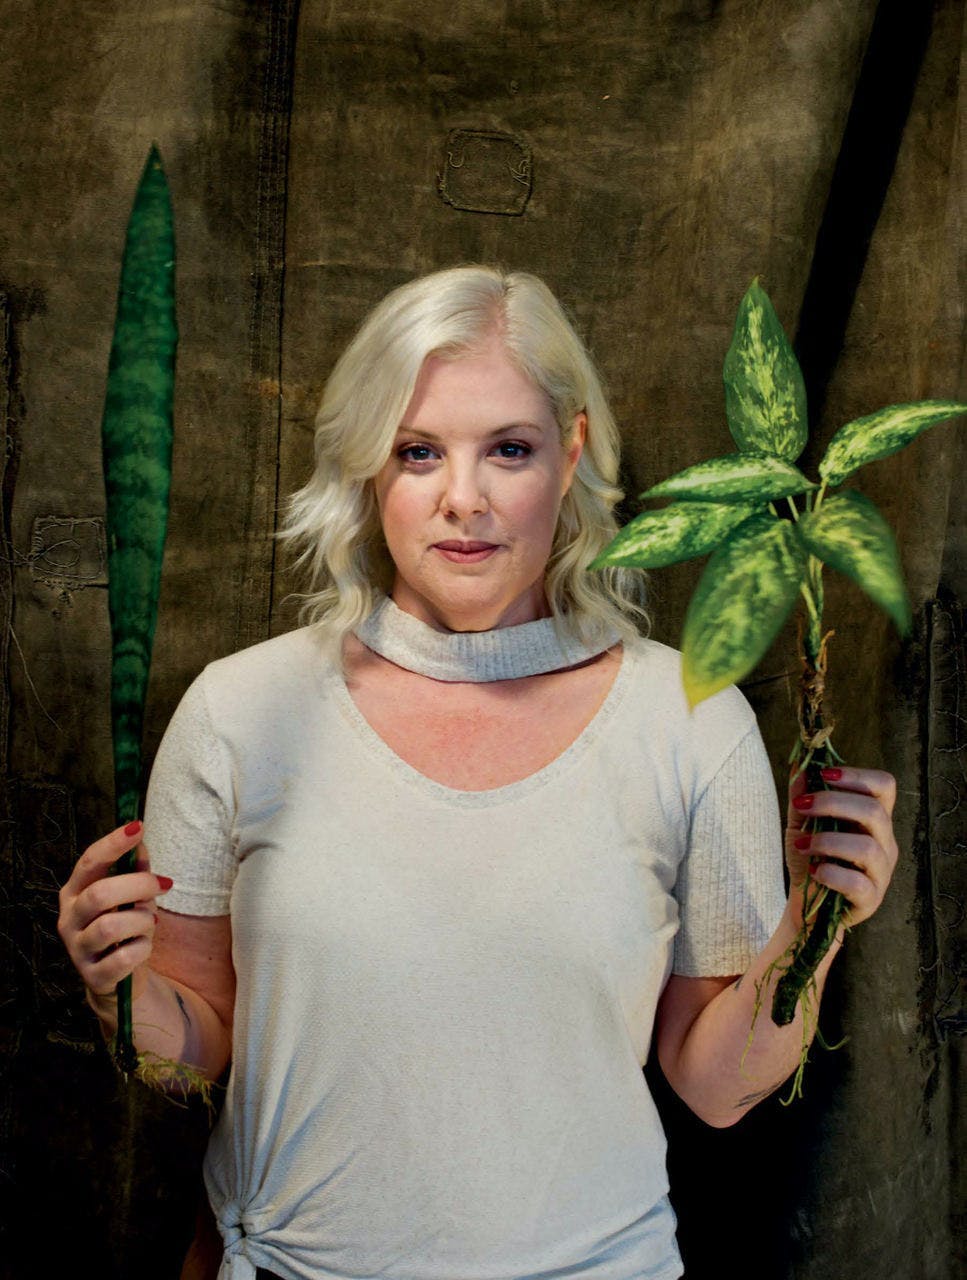 portrait photography person finger woman adult female blonde t-shirt leaf